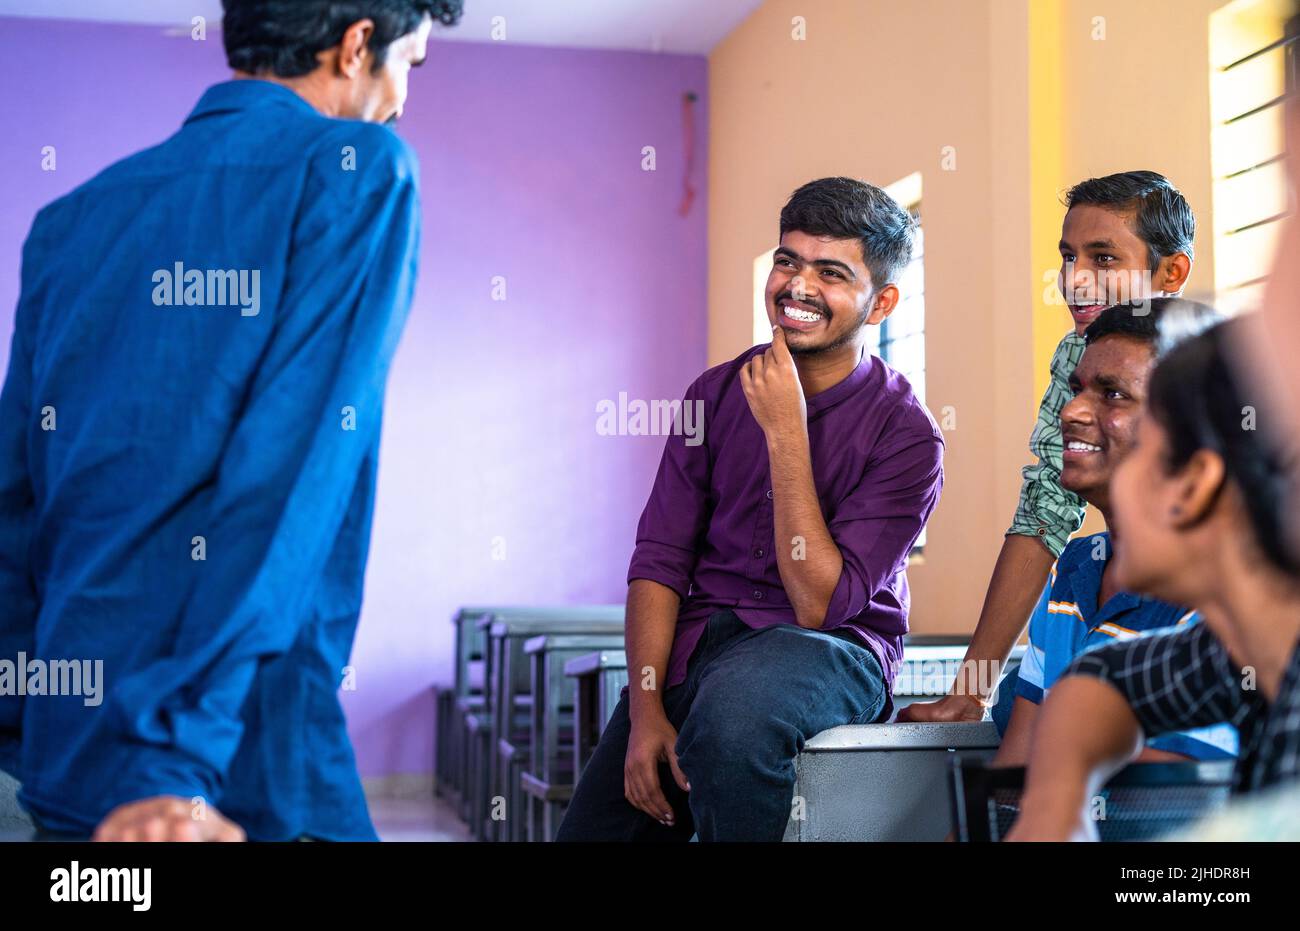 Grupo de estudiantes de la universidad sonriente feliz que tienen charla con uno al otro en clase durante ocio - concepto de tomar el descanso, la amistad y el conocimiento Foto de stock